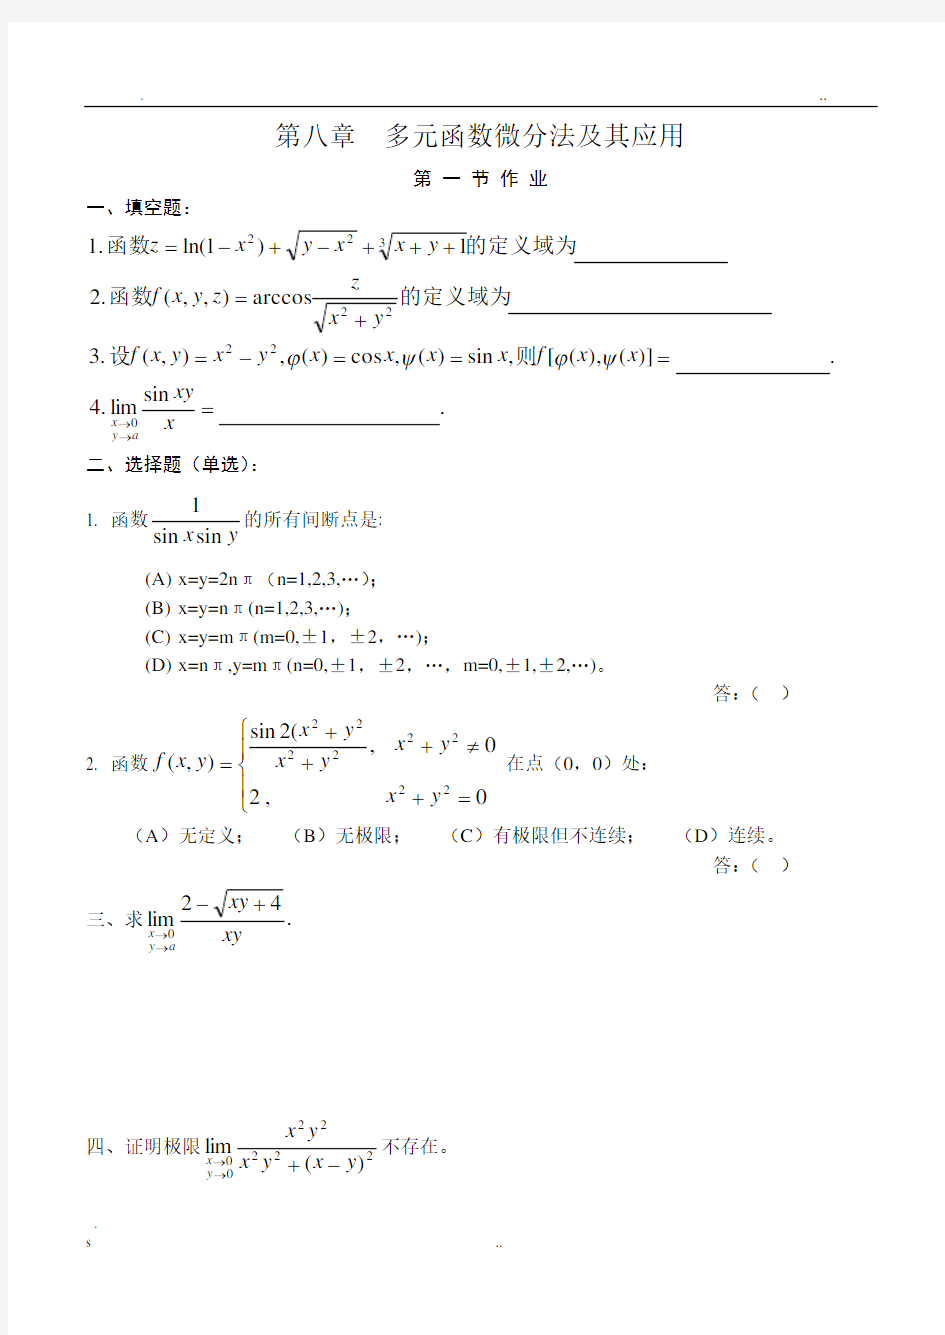 高等数学(同济版)多元函数微分学练习题册